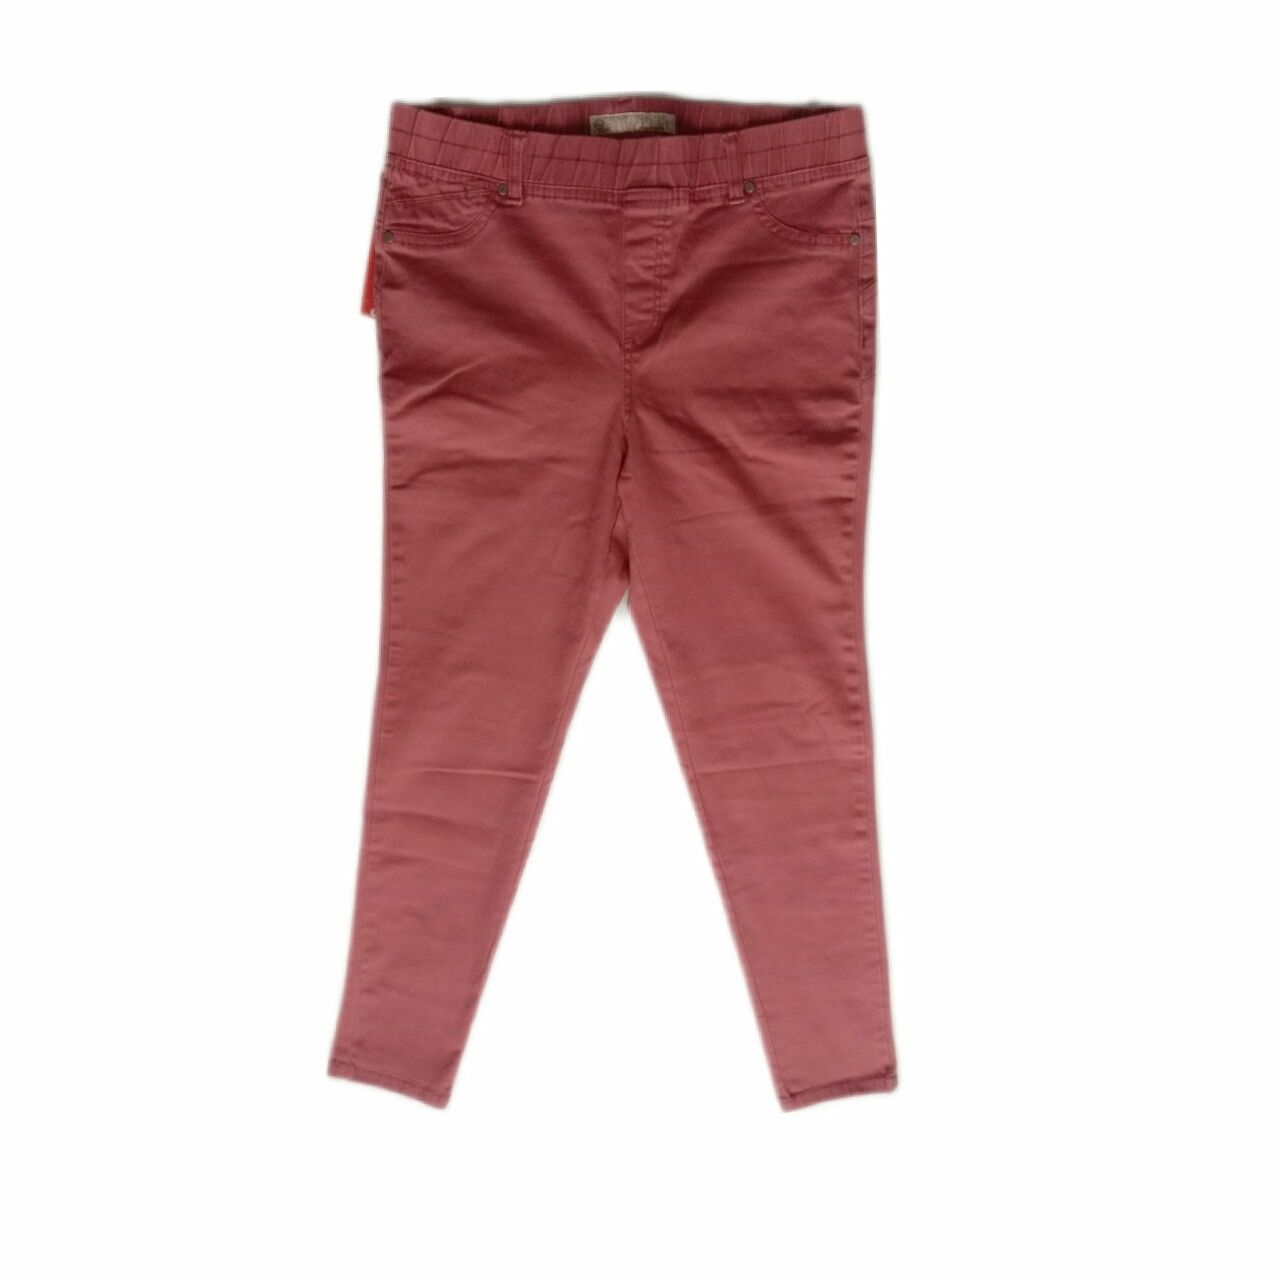 Triset Pink Long Pants